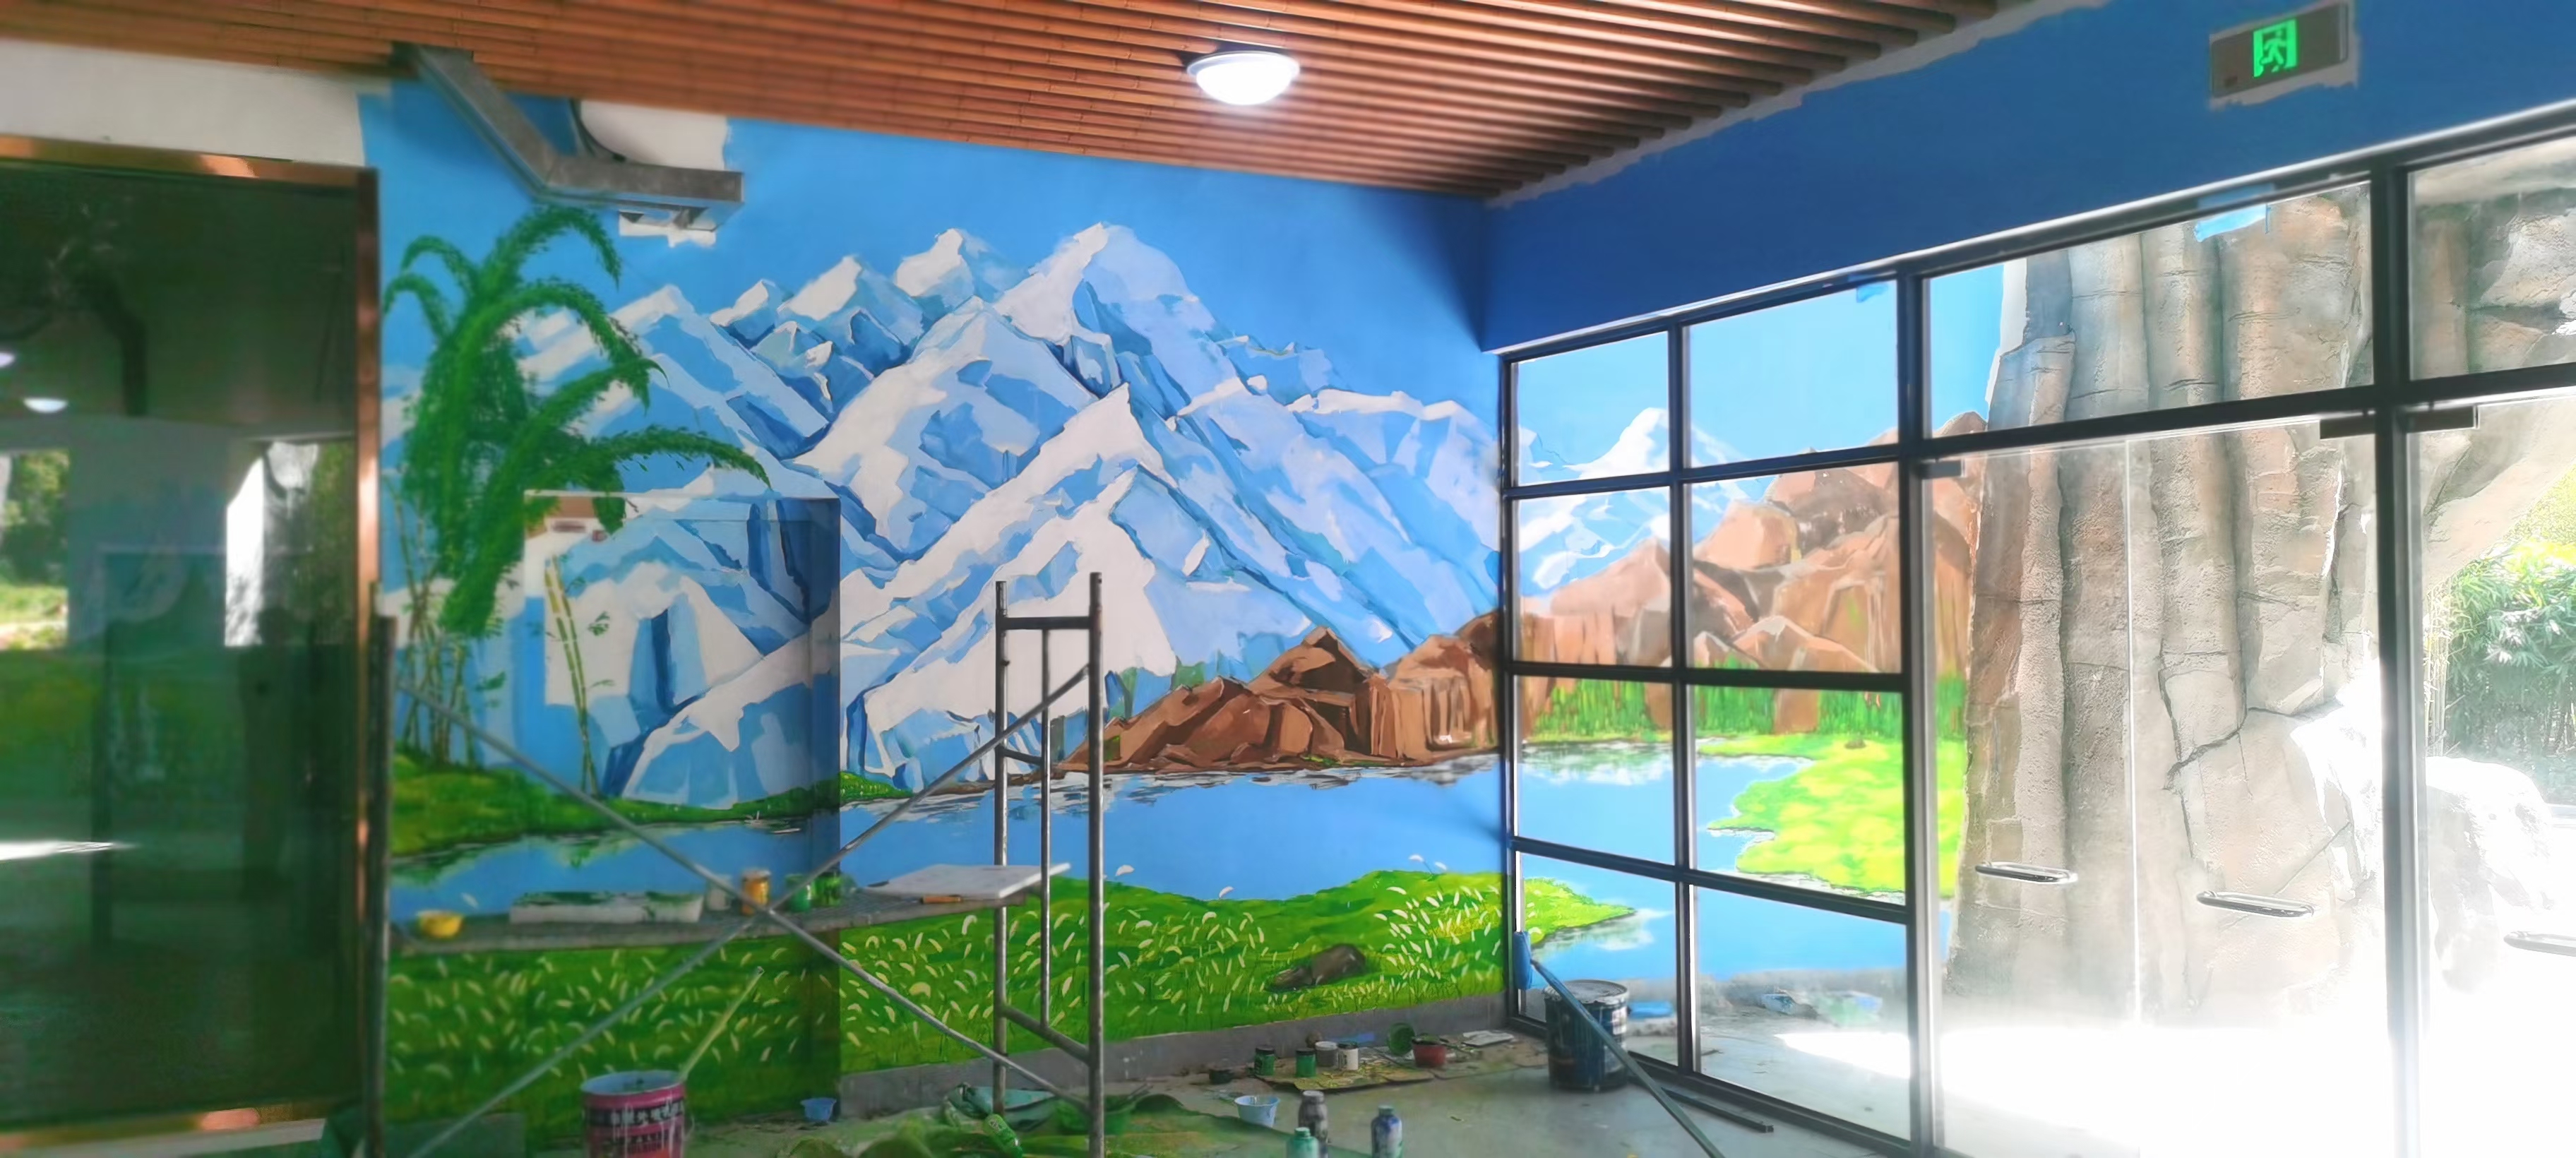 佛山彩绘手绘墙绘画涂鸦壁画团队